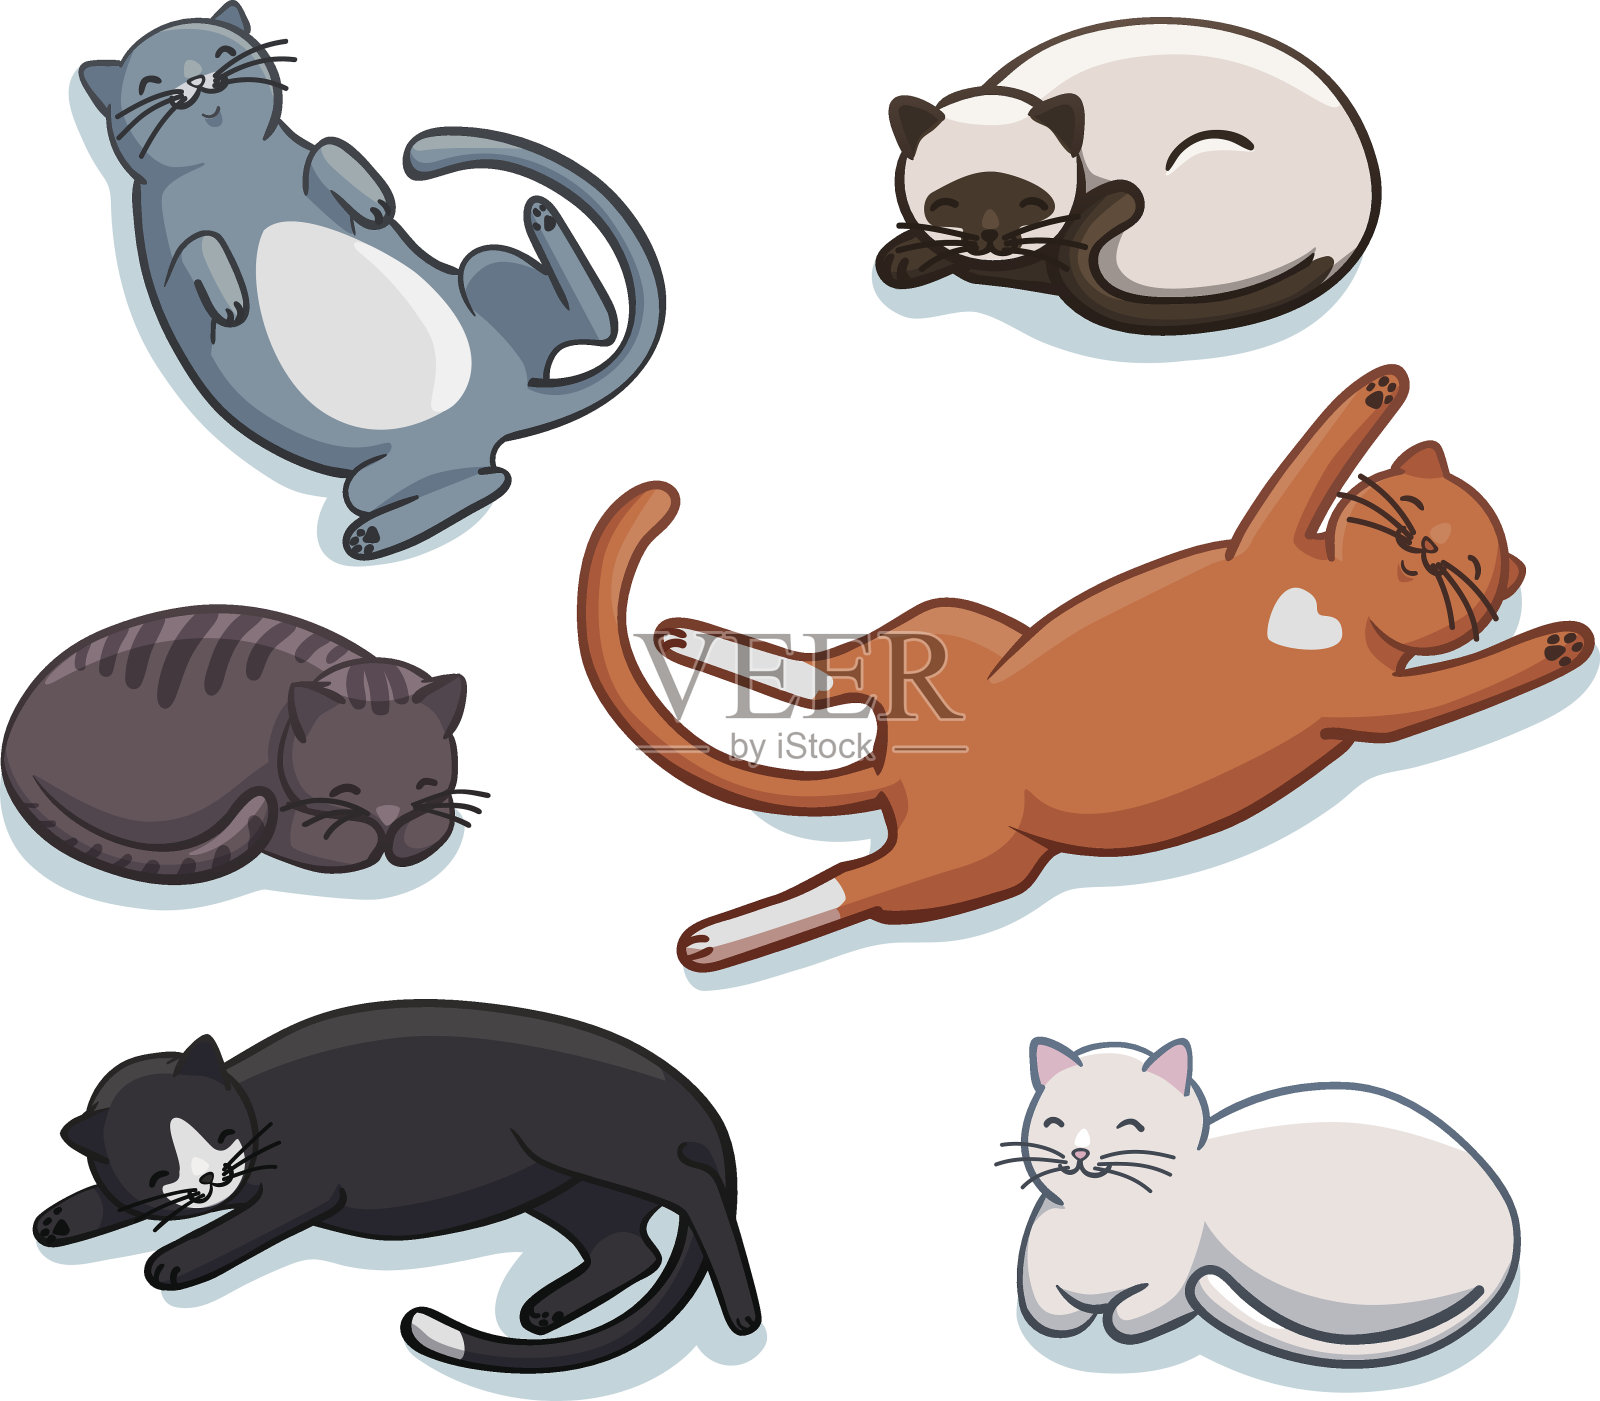 向量组可爱的睡觉的猫。不同姿势和颜色的有趣卡通猫咪插画图片素材